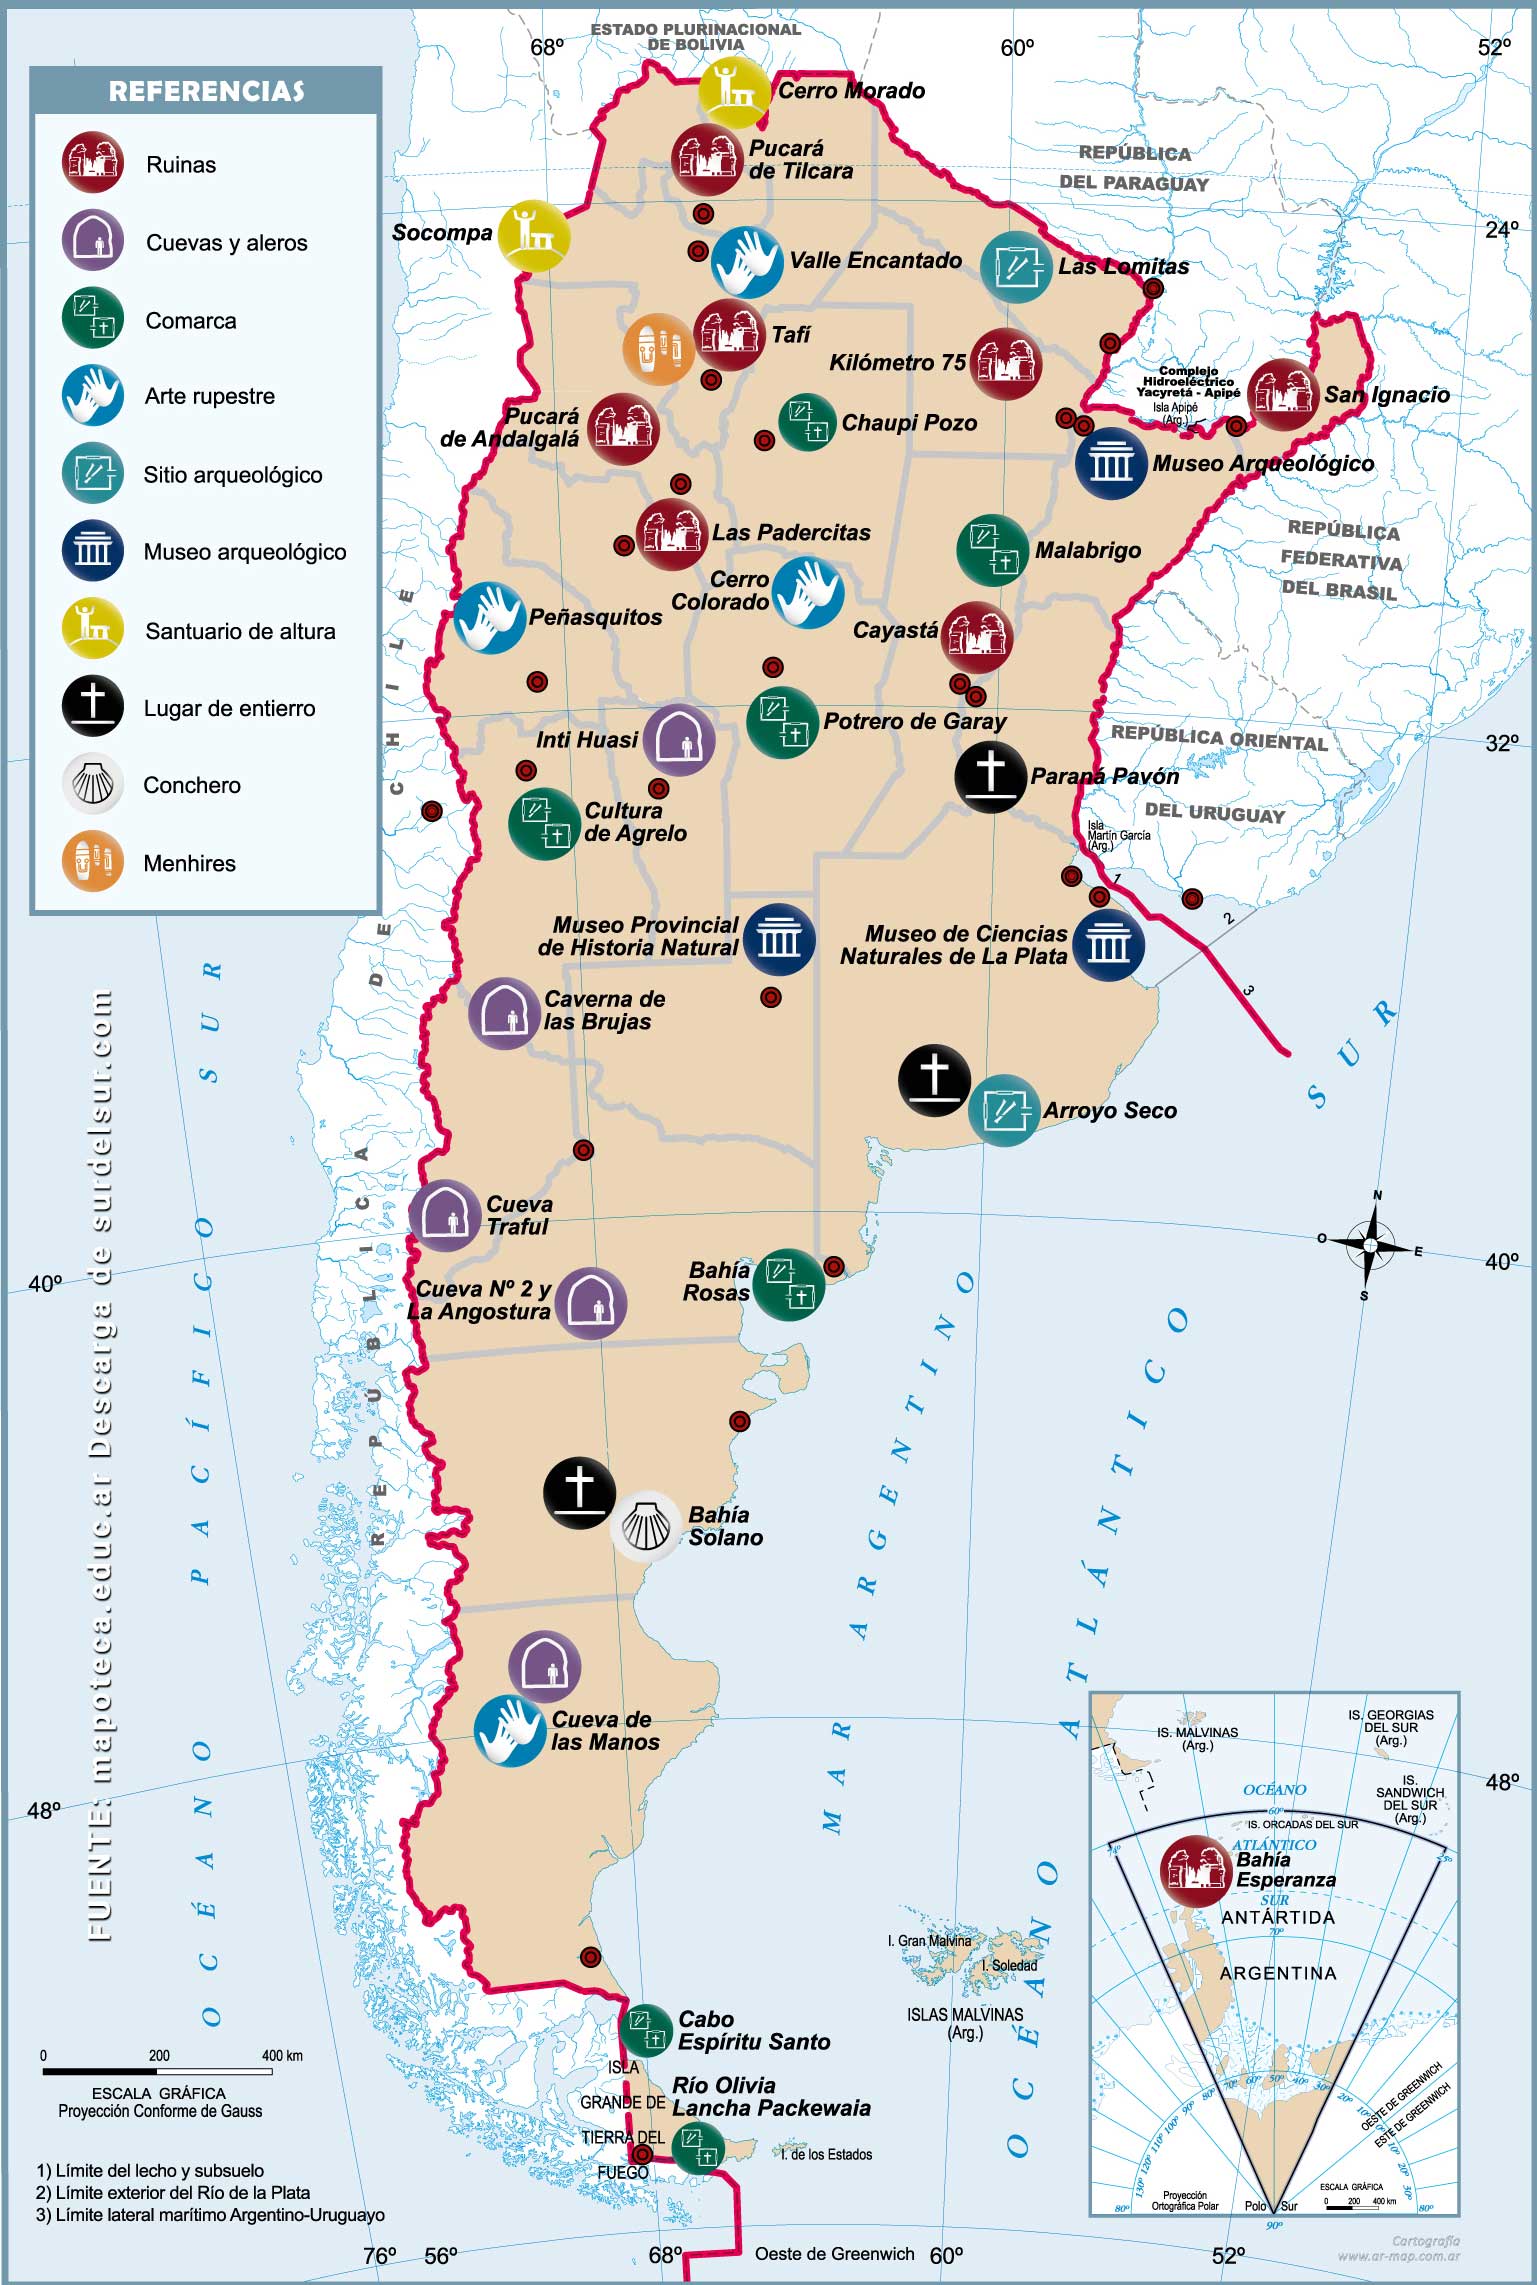 Mapa de arqueológico de Argentina con la la ubicación de ruinas, menhires, cuevas, arte rupestre, santuarios de altura, lugares de entierro, conchero, comarcas, sitios y museos arqueológicos. 